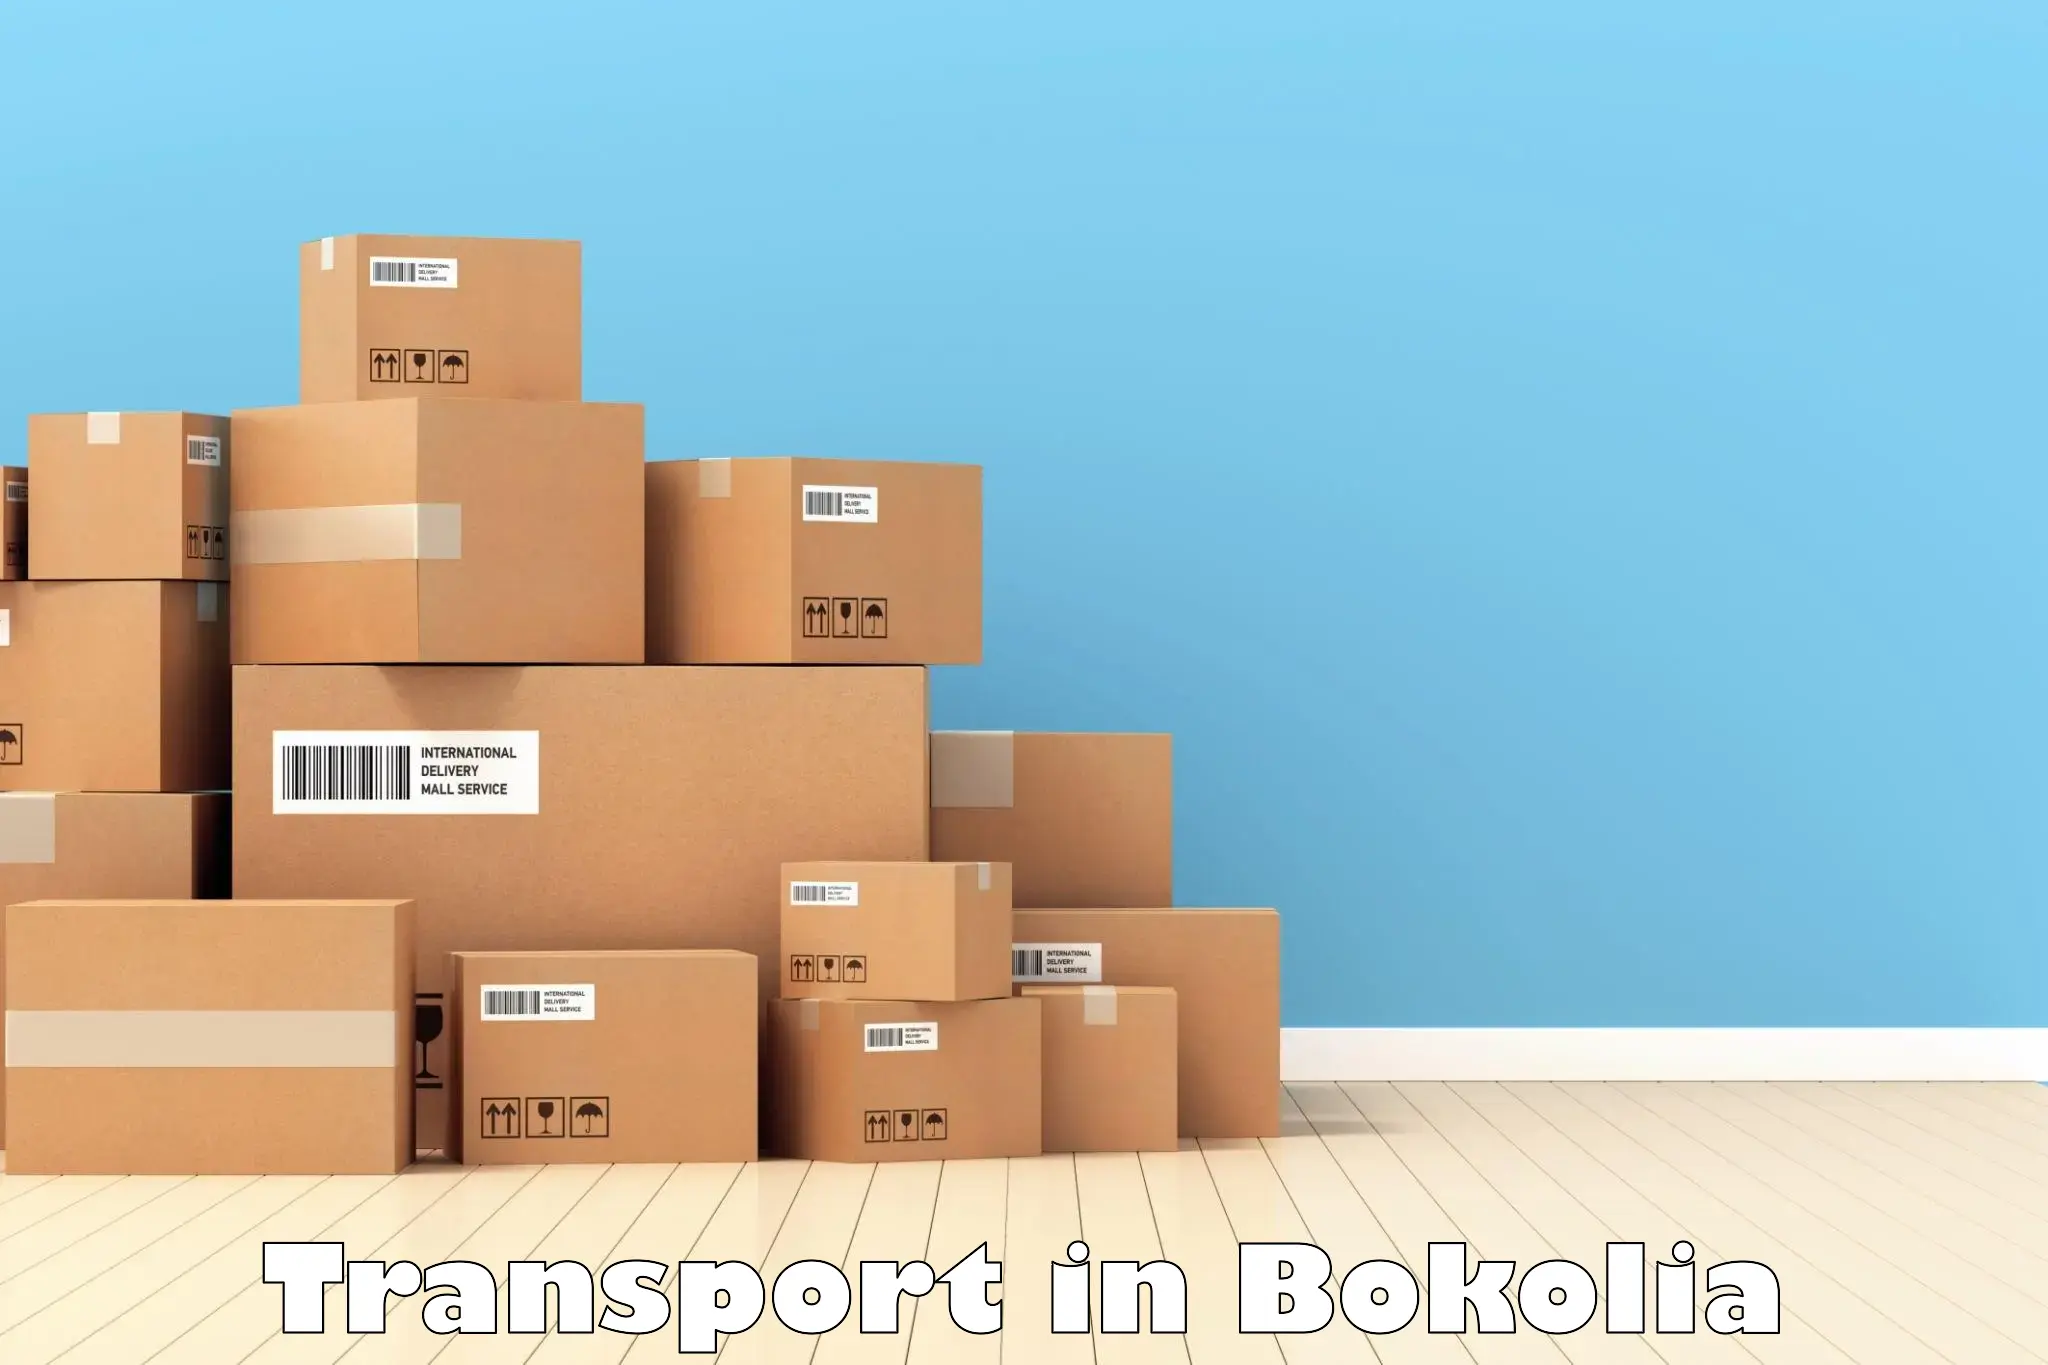 India truck logistics services in Bokolia